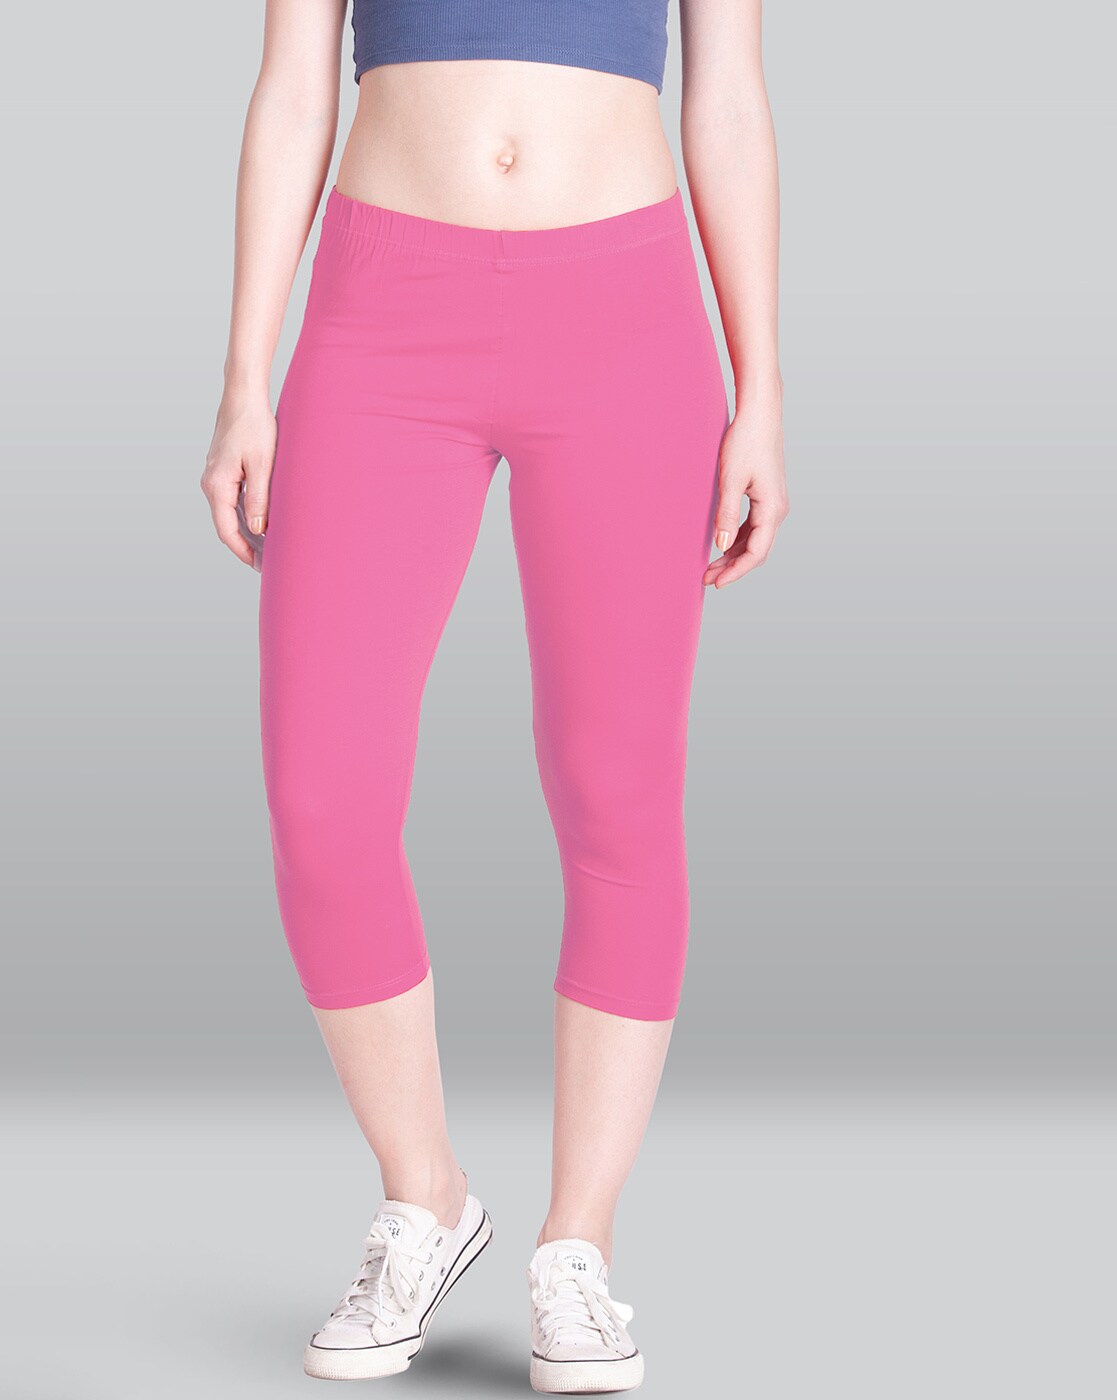 Buy Elleven Pink Regular Fit Capri Pants for Women Online  Tata CLiQ